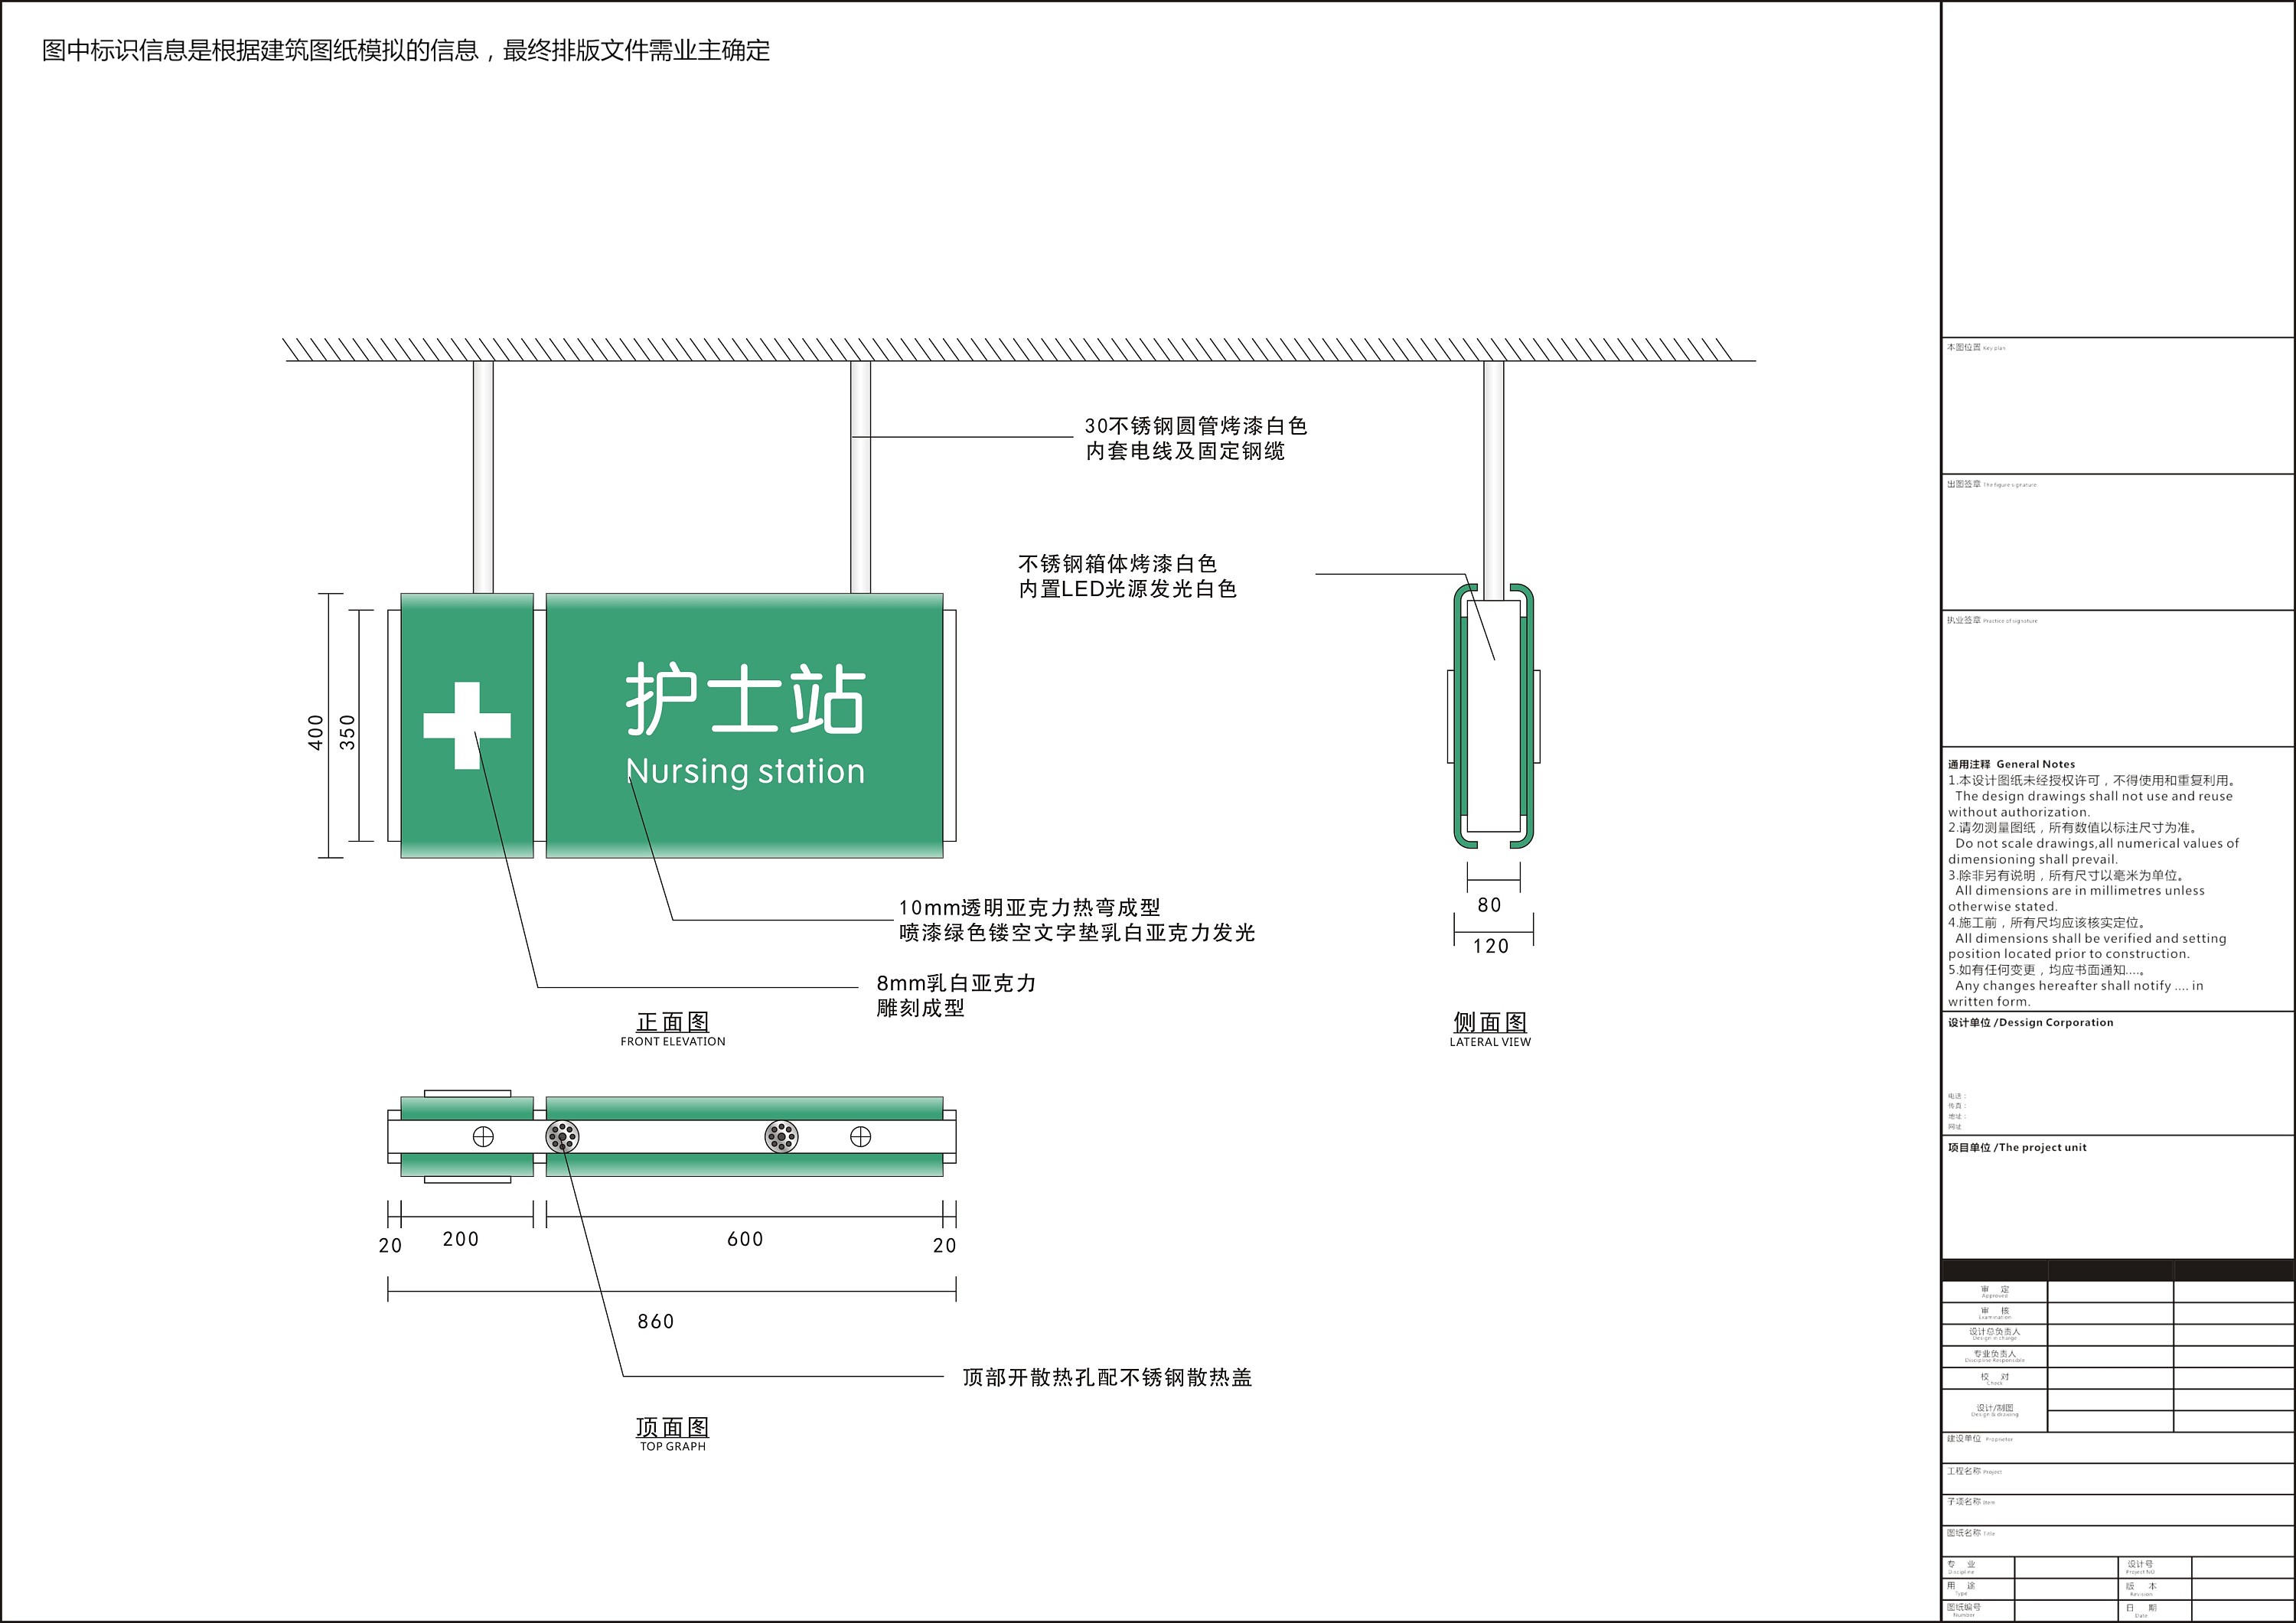 四川省人民医院(西区)导视系统规划设计(干货、